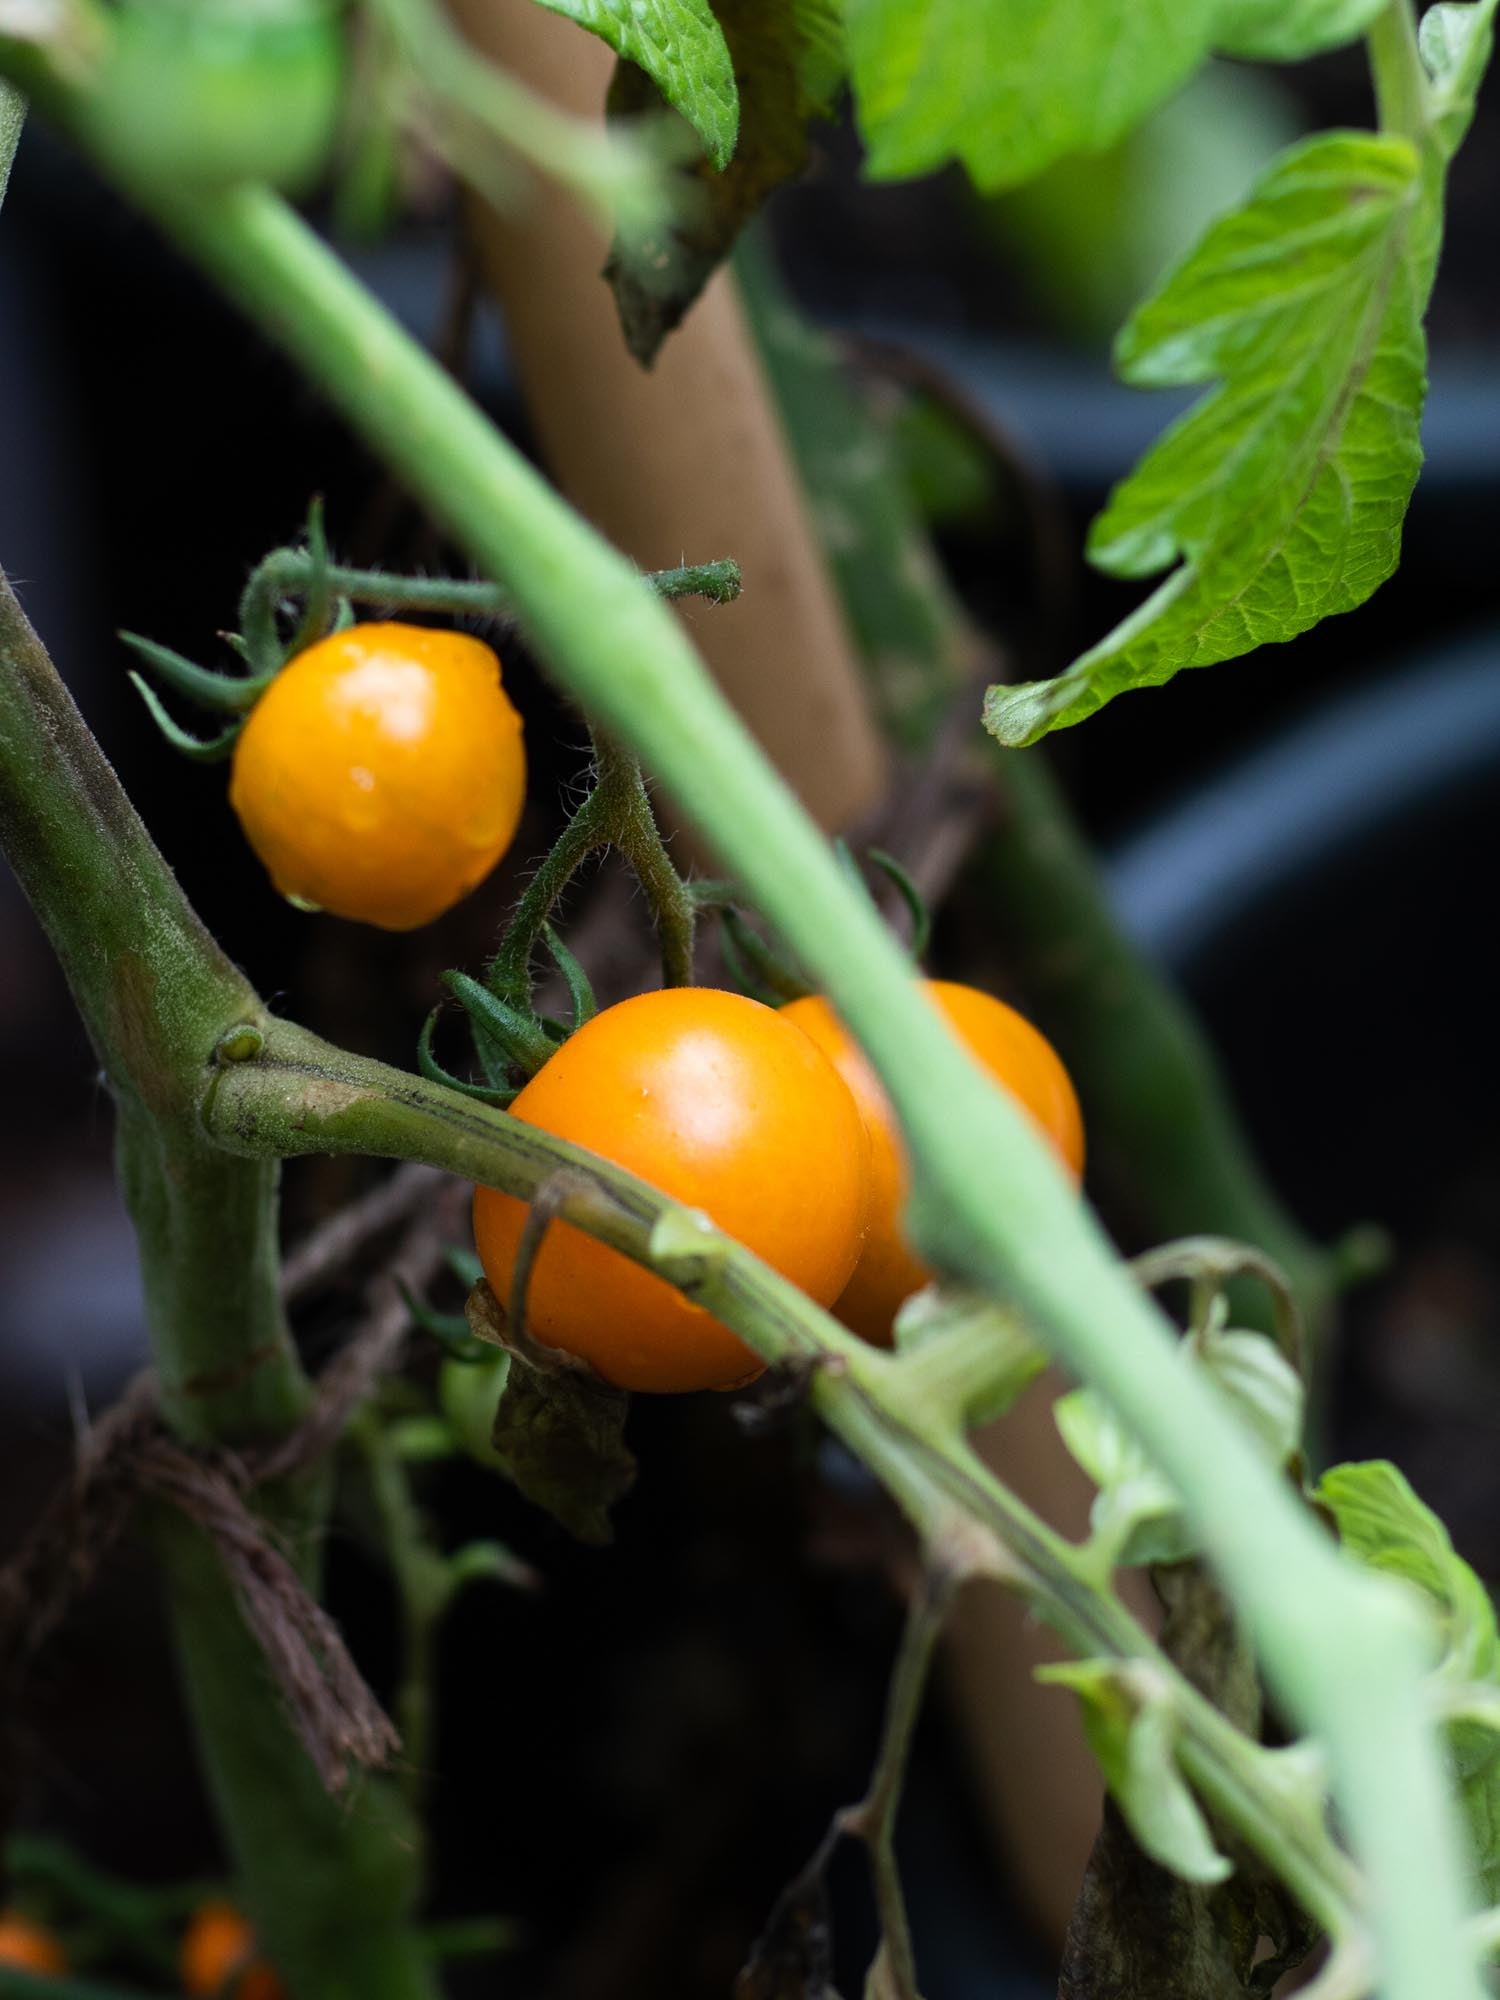 Orange Striped Darby tomato